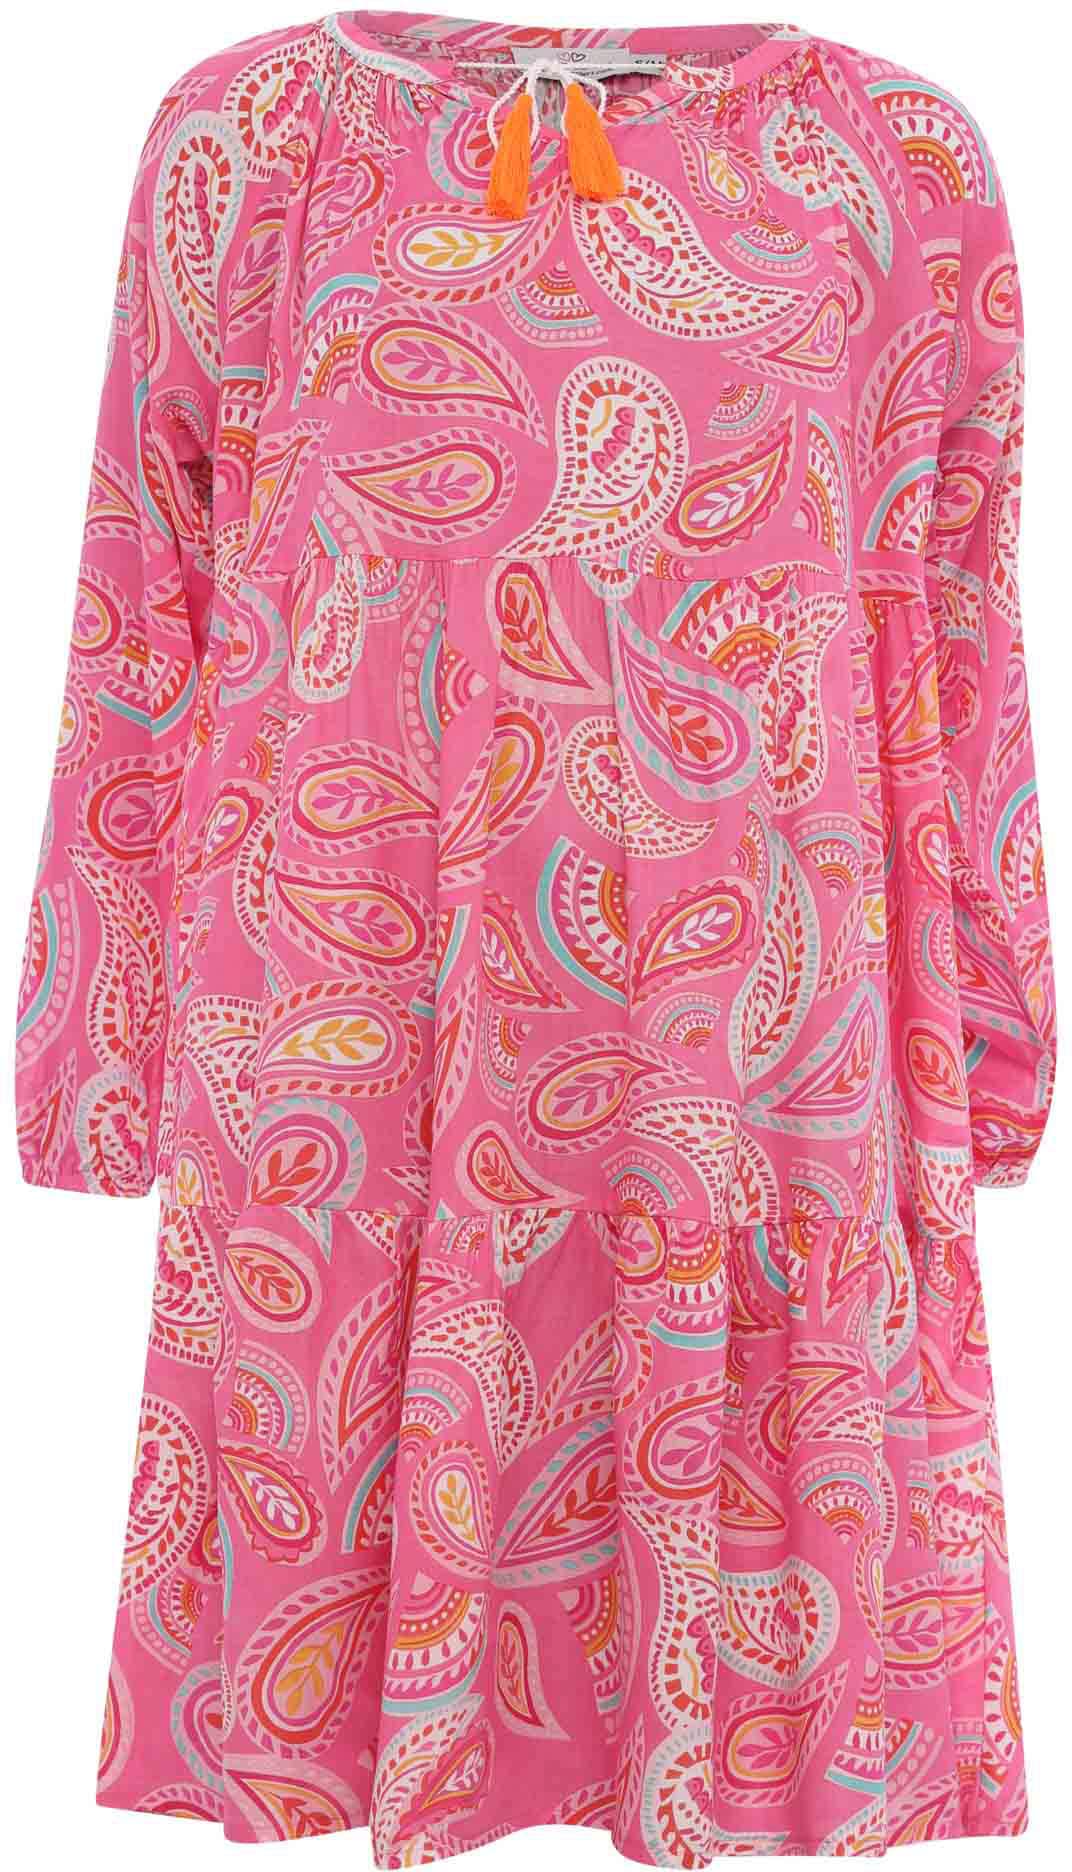 Pinkes Kleid online | OTTO kaufen Pinkfarbene Kleider jetzt bei